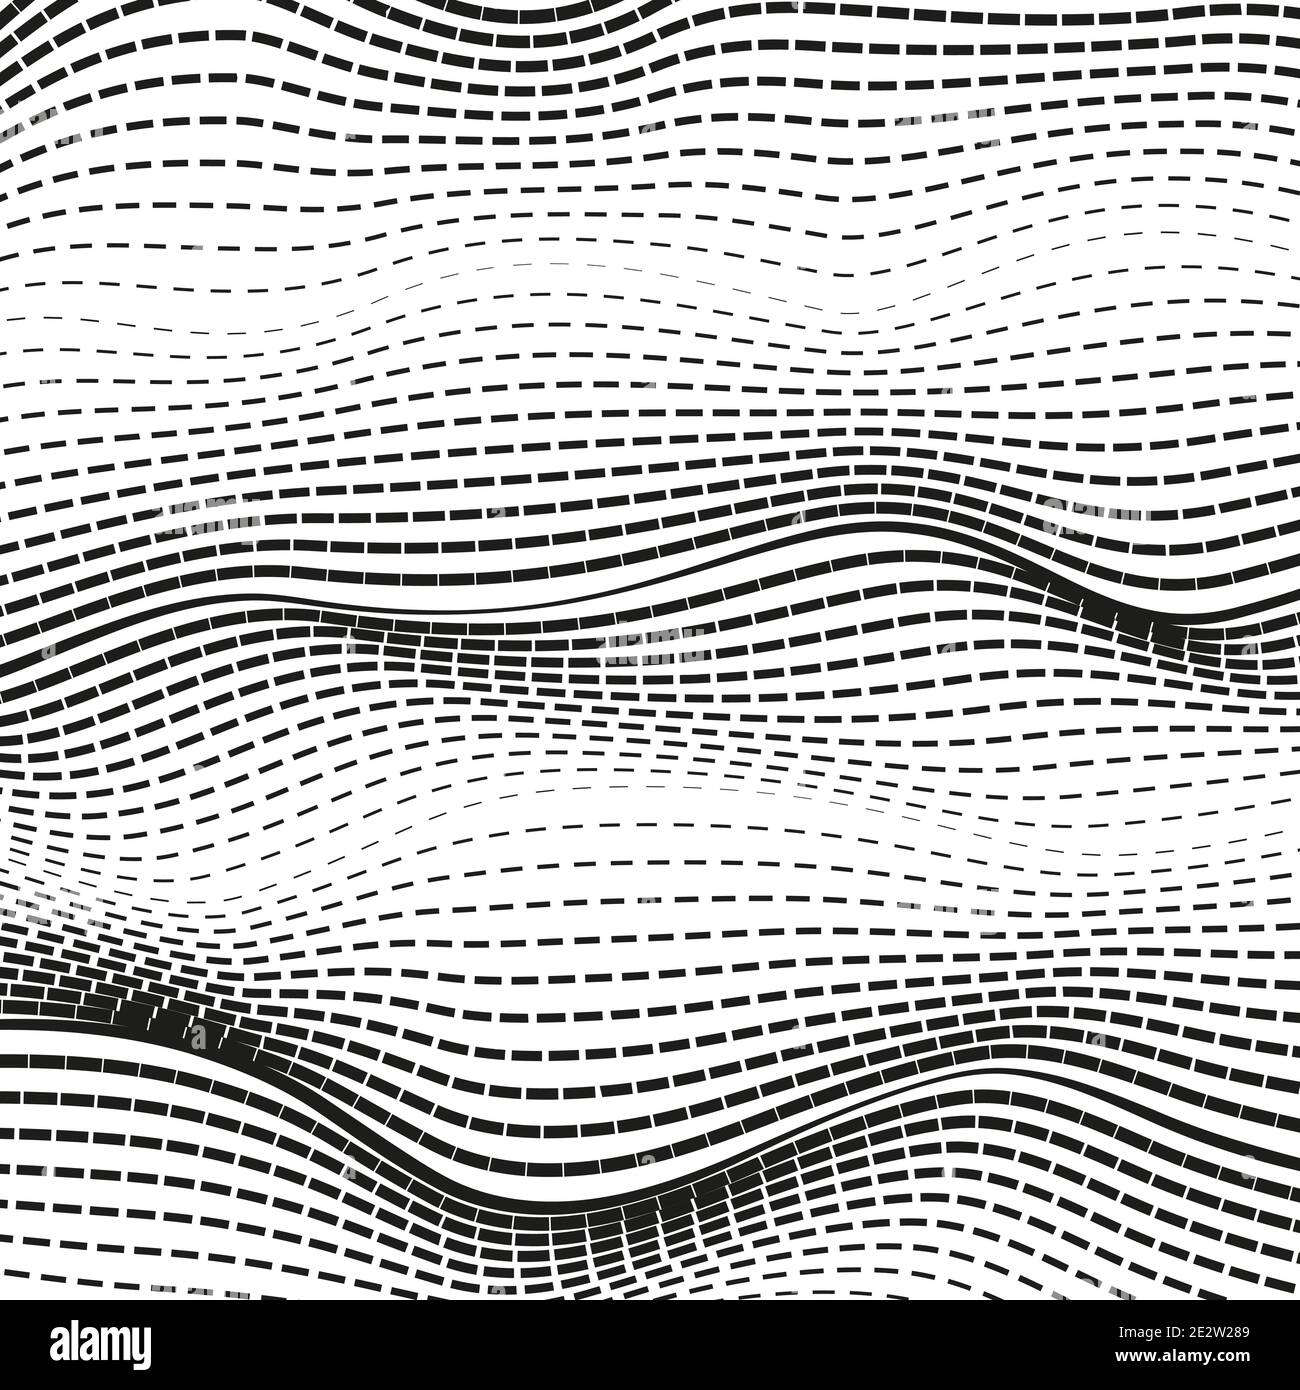 Gewellte gepunktete Linien. Vektorkurven verquillern. Abstrakter strukturierter Hintergrund. Schwarz und weiß moderne Illusion. Muster der Technologiewelle. EPS10 Stock Vektor